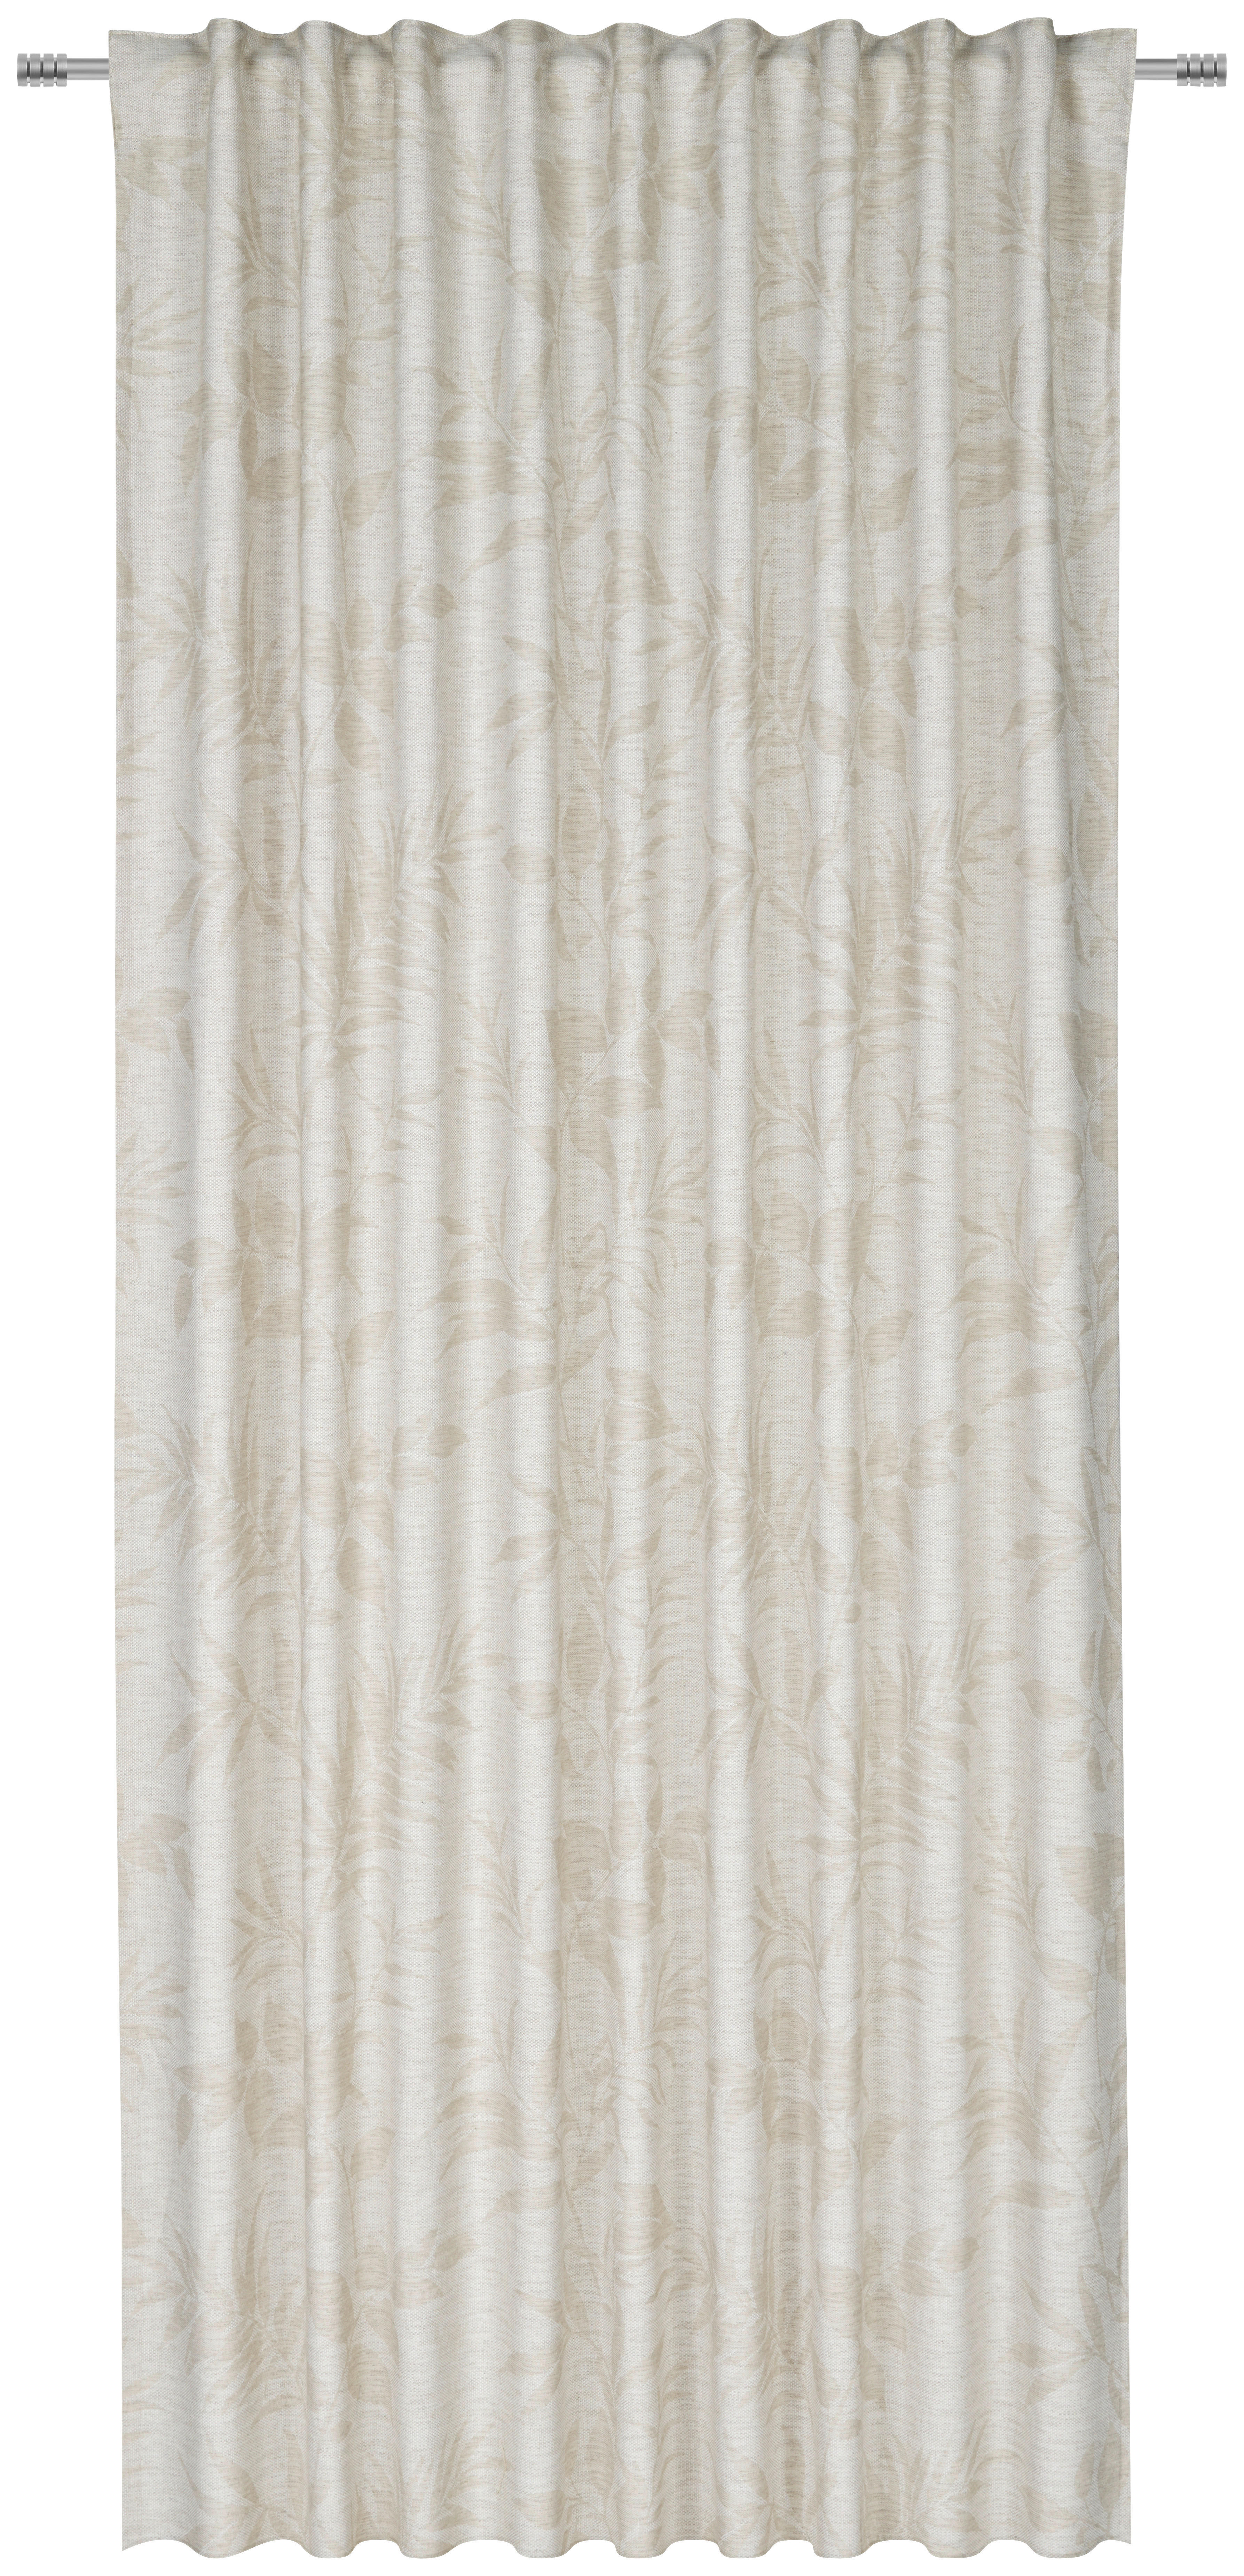 FERTIGVORHANG LA PALMA 140/245 cm   - Beige, KONVENTIONELL, Textil (140/245cm) - Esposa